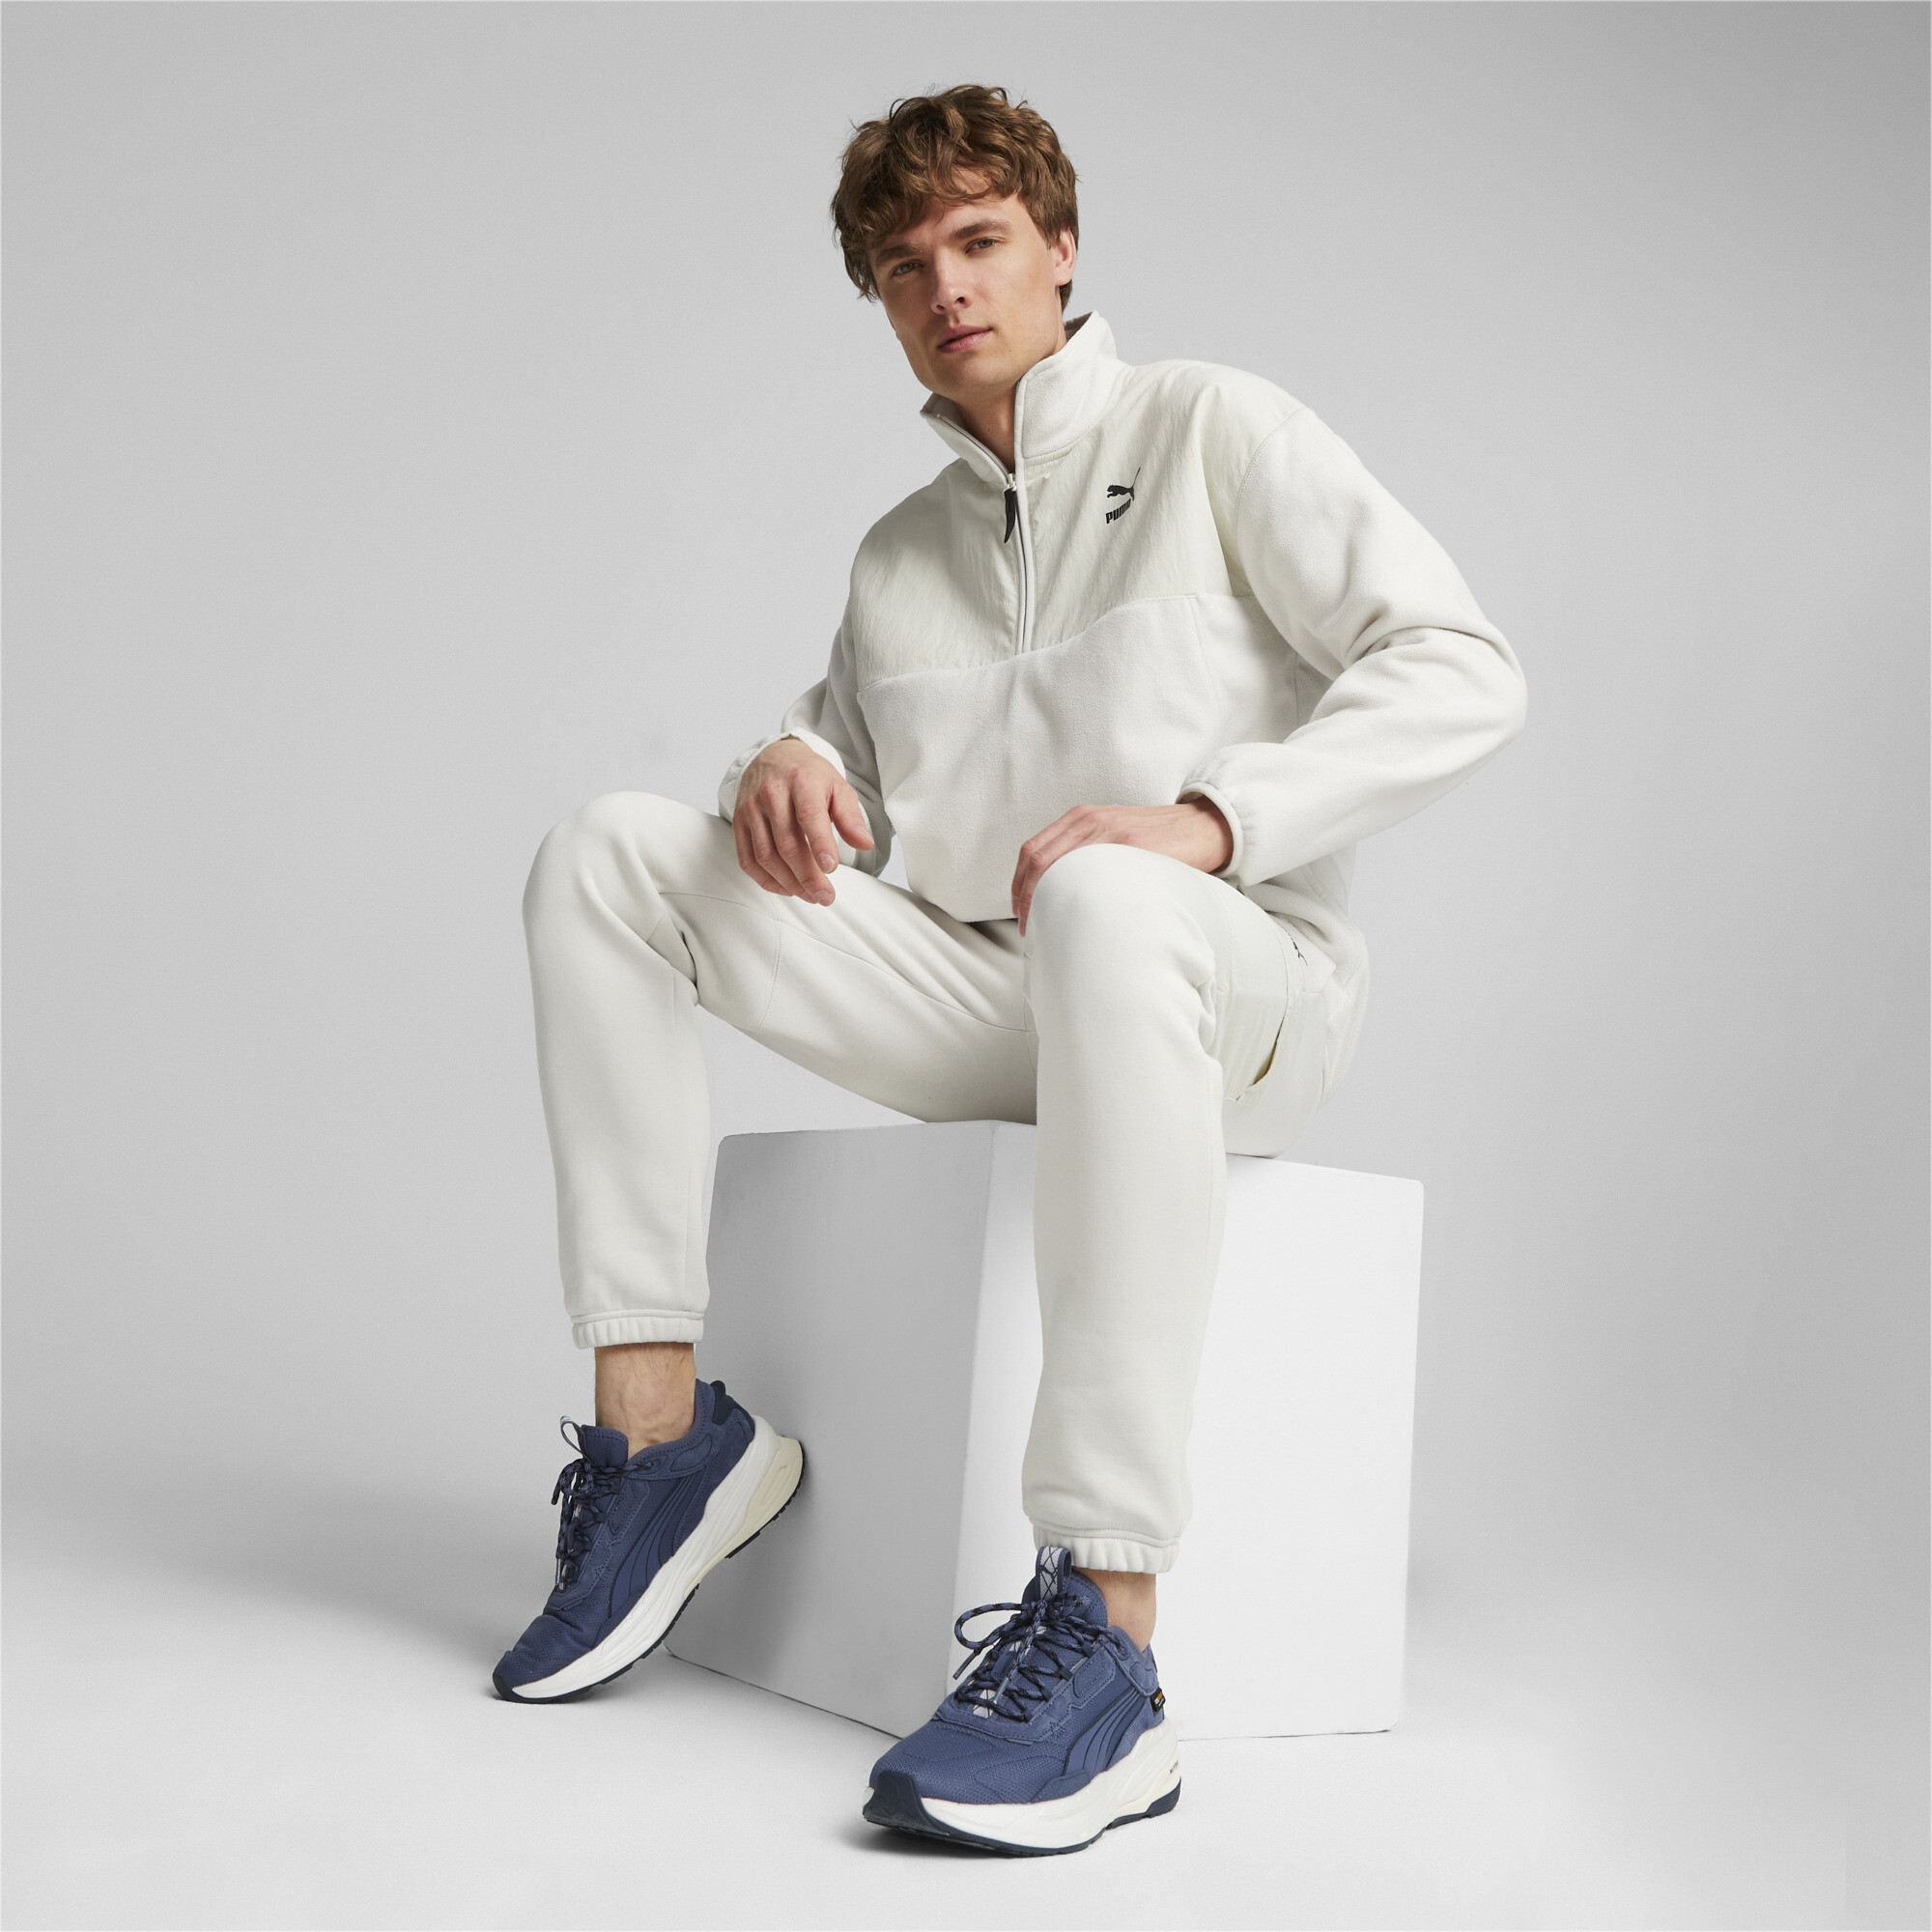 Men's Puma CLASSICS UTILITY's Half-Zip Jacket, Gray, Size L, Clothing